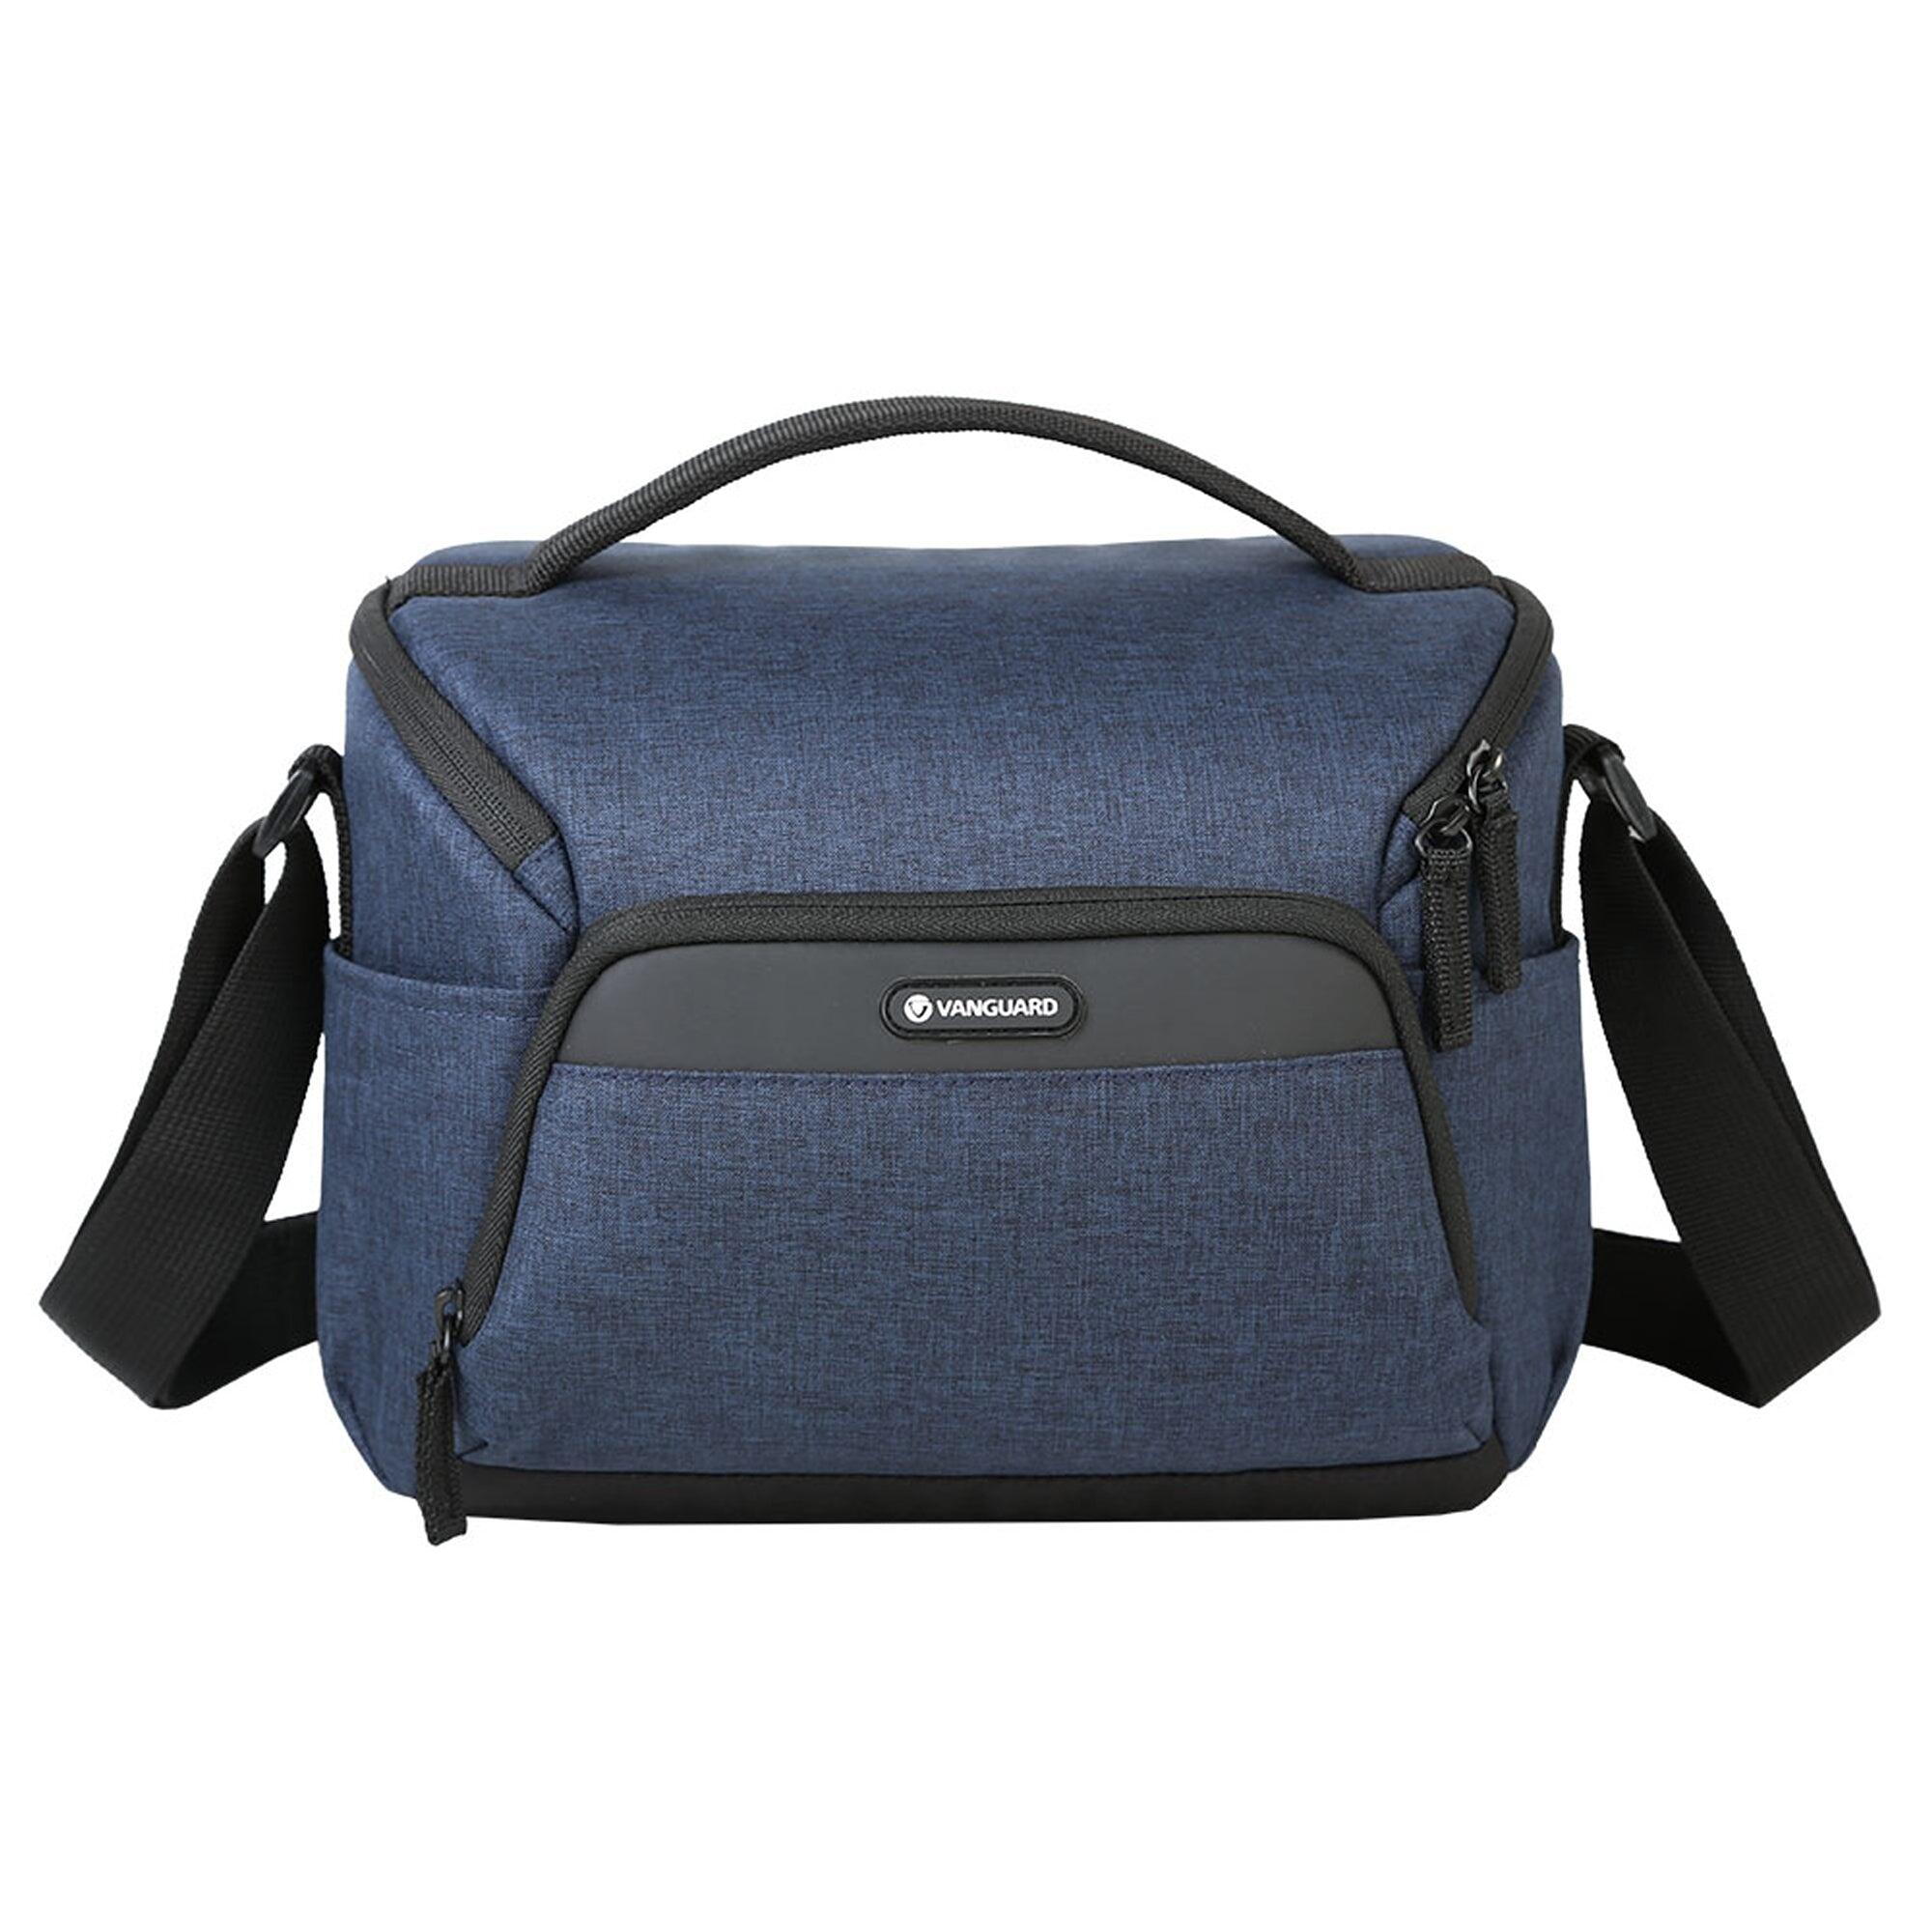 VESTA Aspire 25 NV Shoulder Bag - Blue 4/5